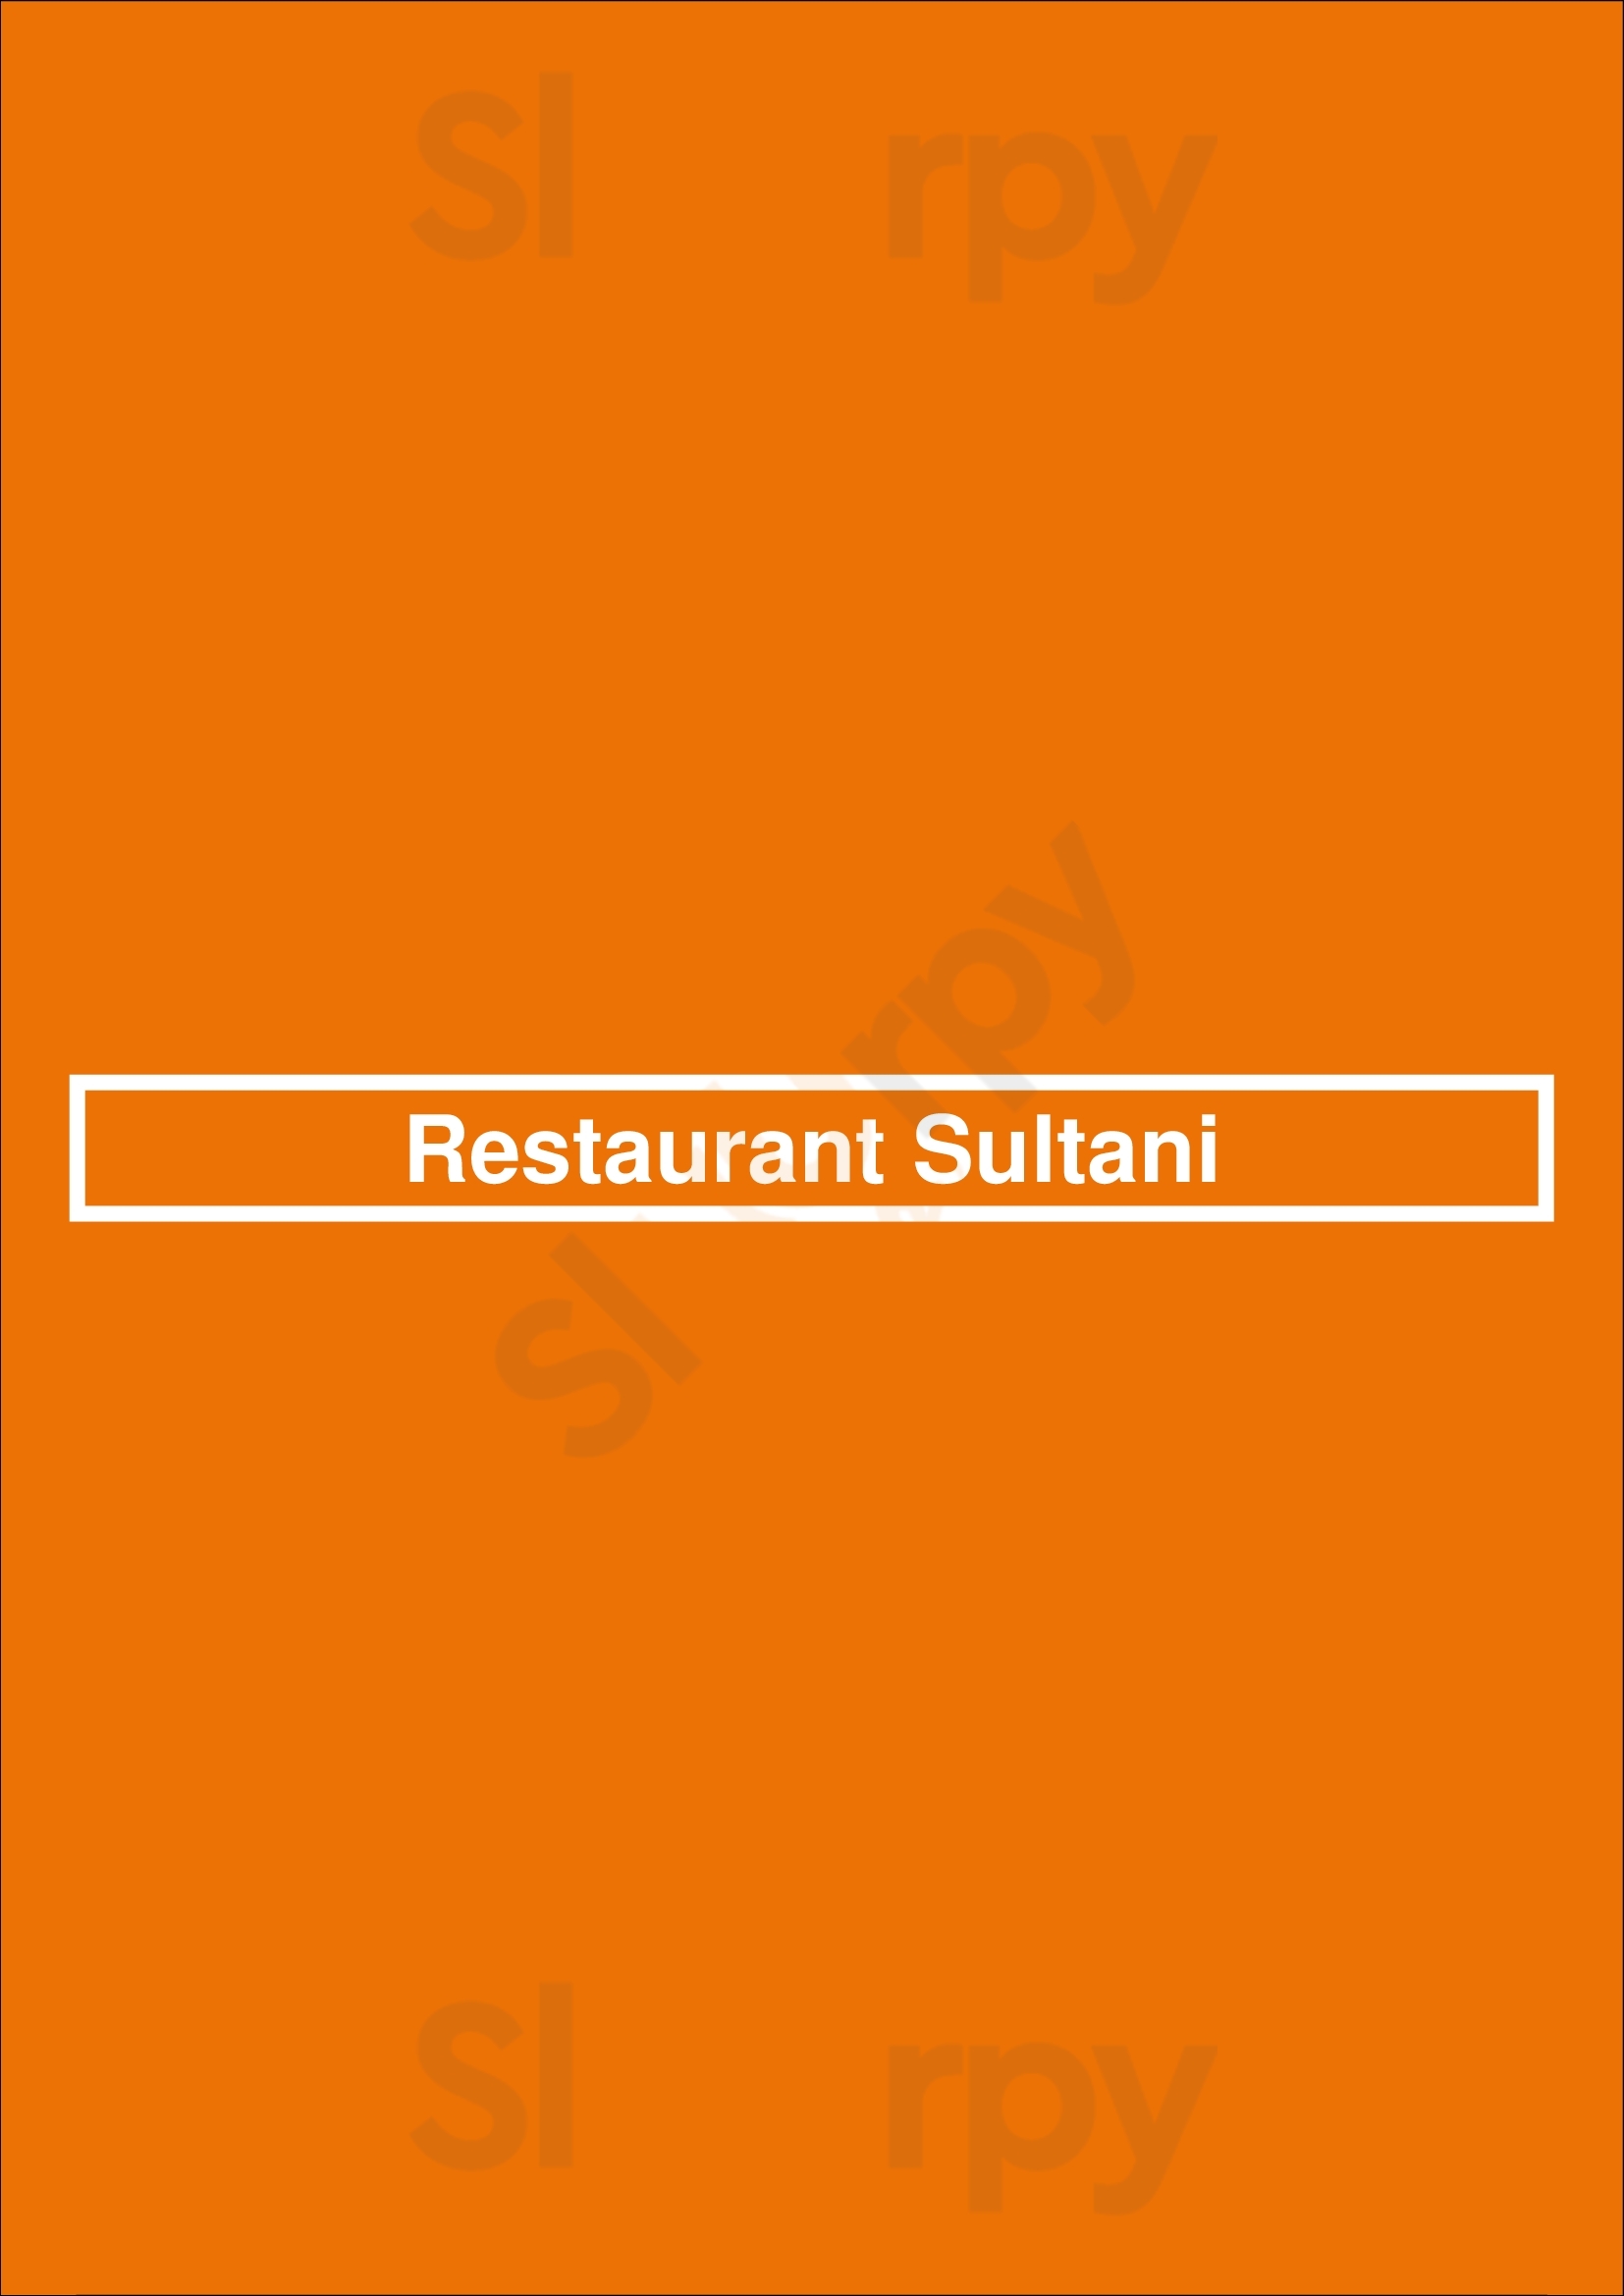 Restaurant Sultani Zutphen Menu - 1